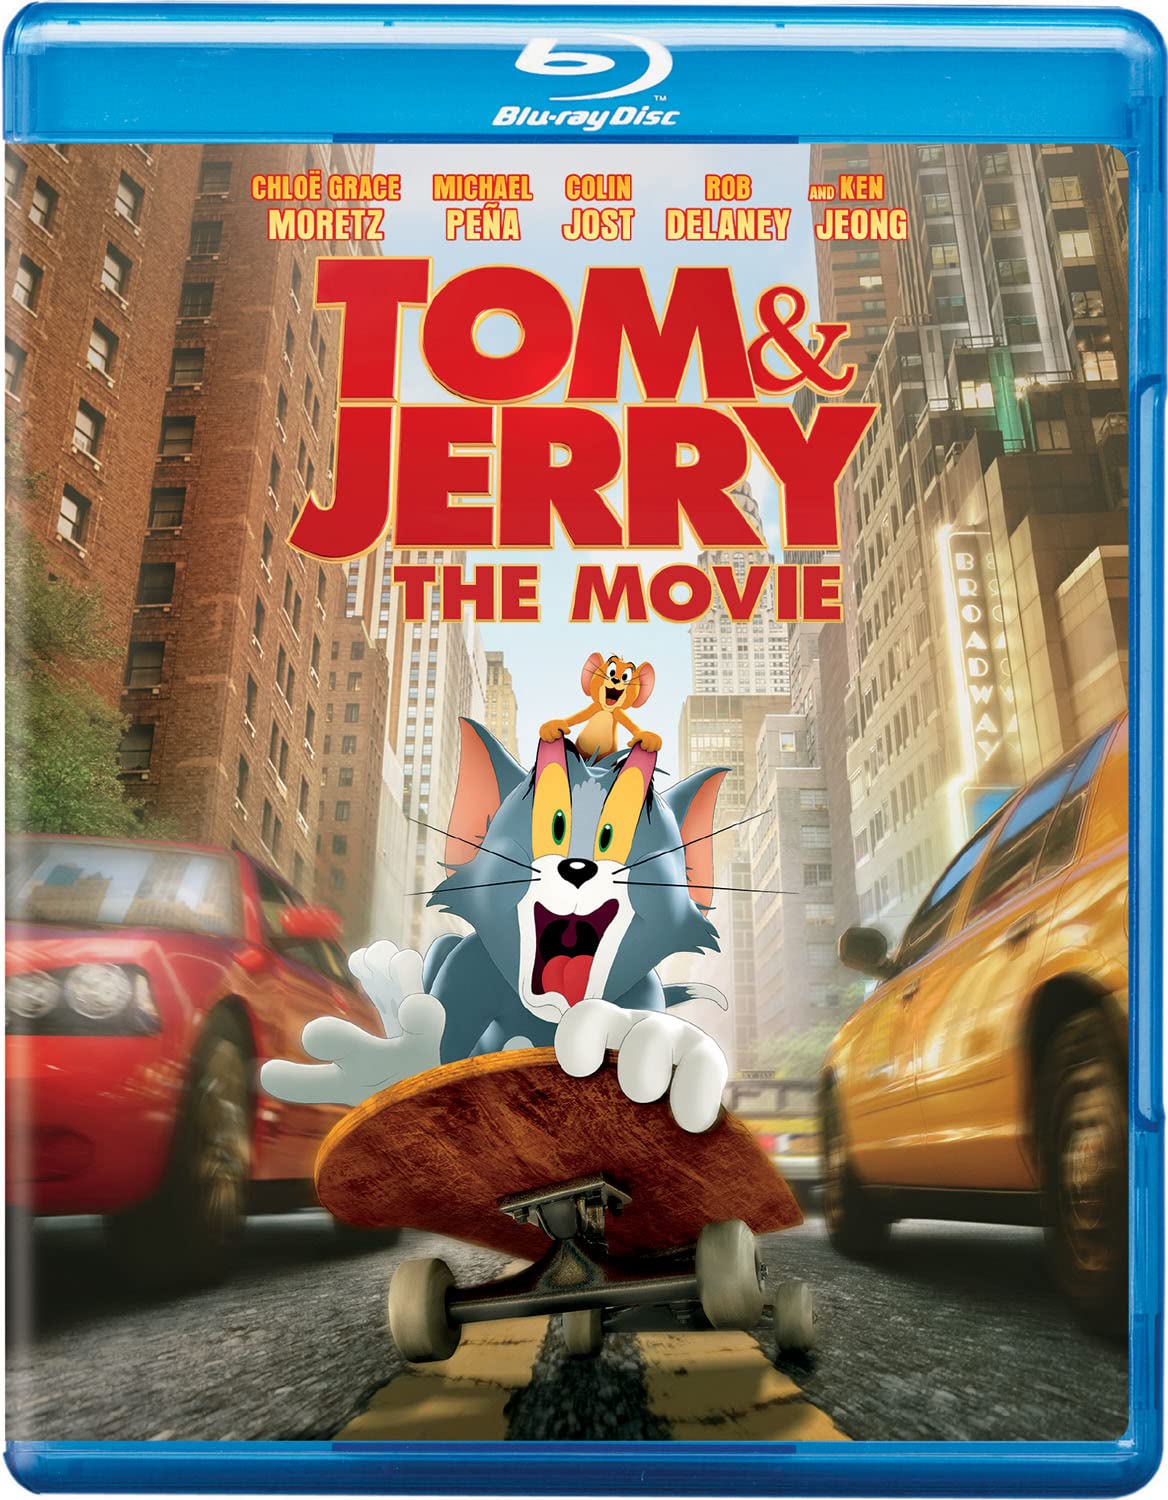 Tom & Jerry: The Movie - Blu-ray [ 2021 ]  - Adventure Movies On Blu-ray - Movies On GRUV